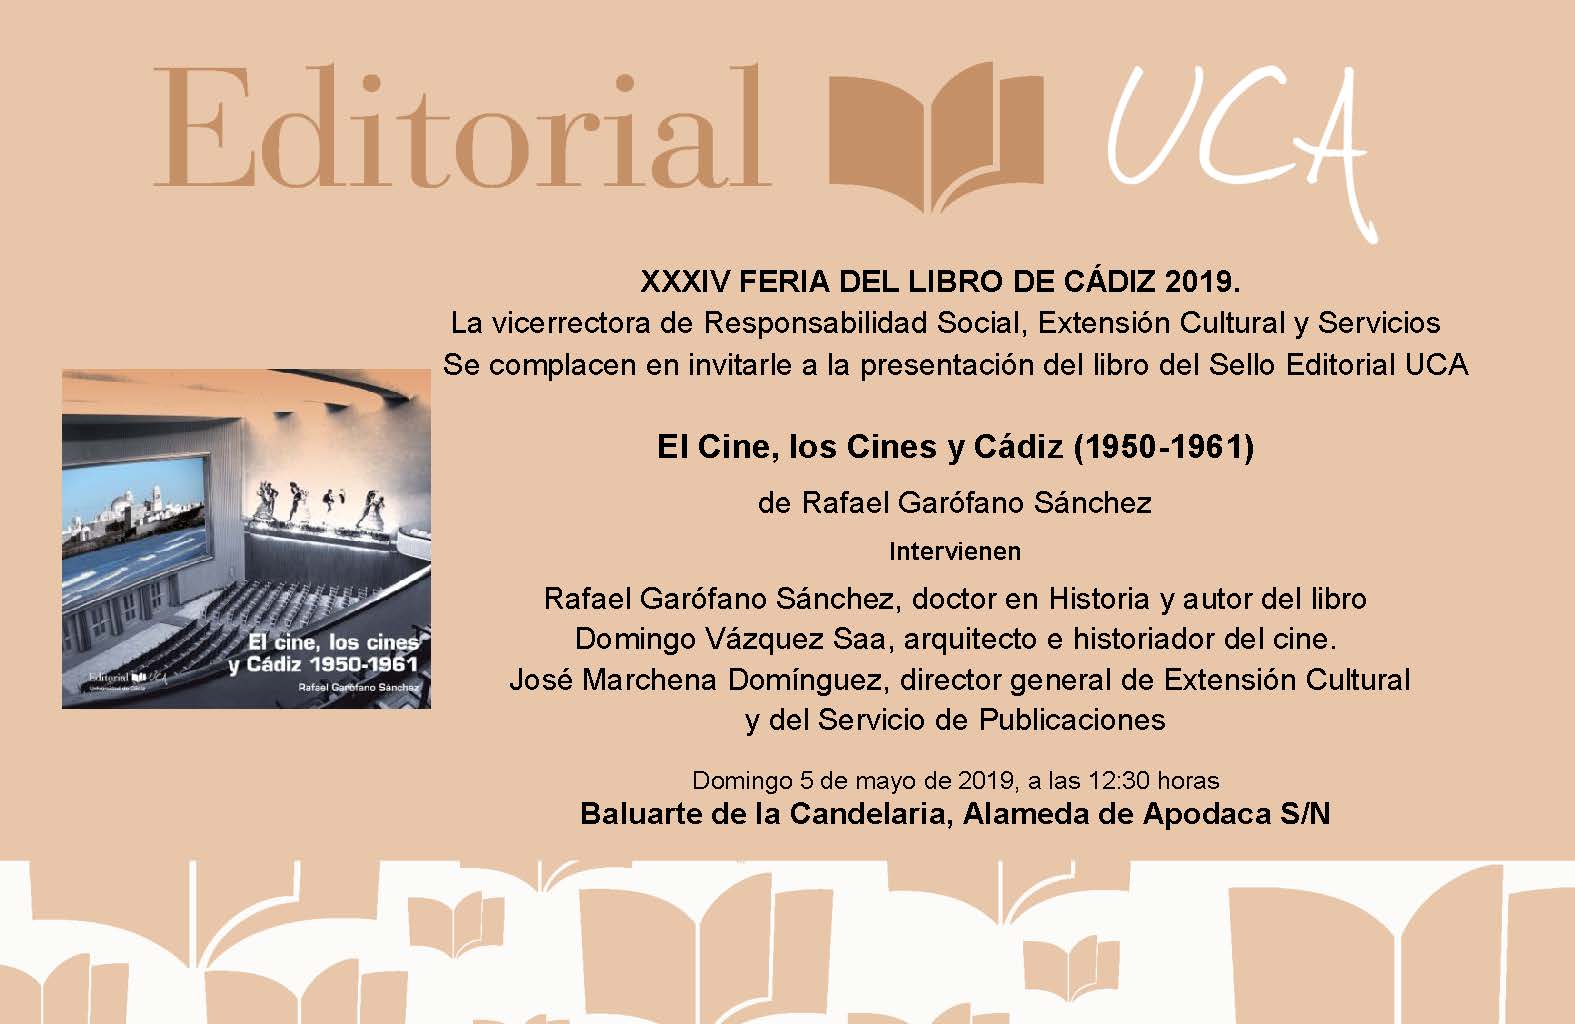 Presentación en la XXXIV feria del libro de Cádiz de el cine, “Los cines y Cádiz (1950-1961)” última novedad del Sello Editorial UCA